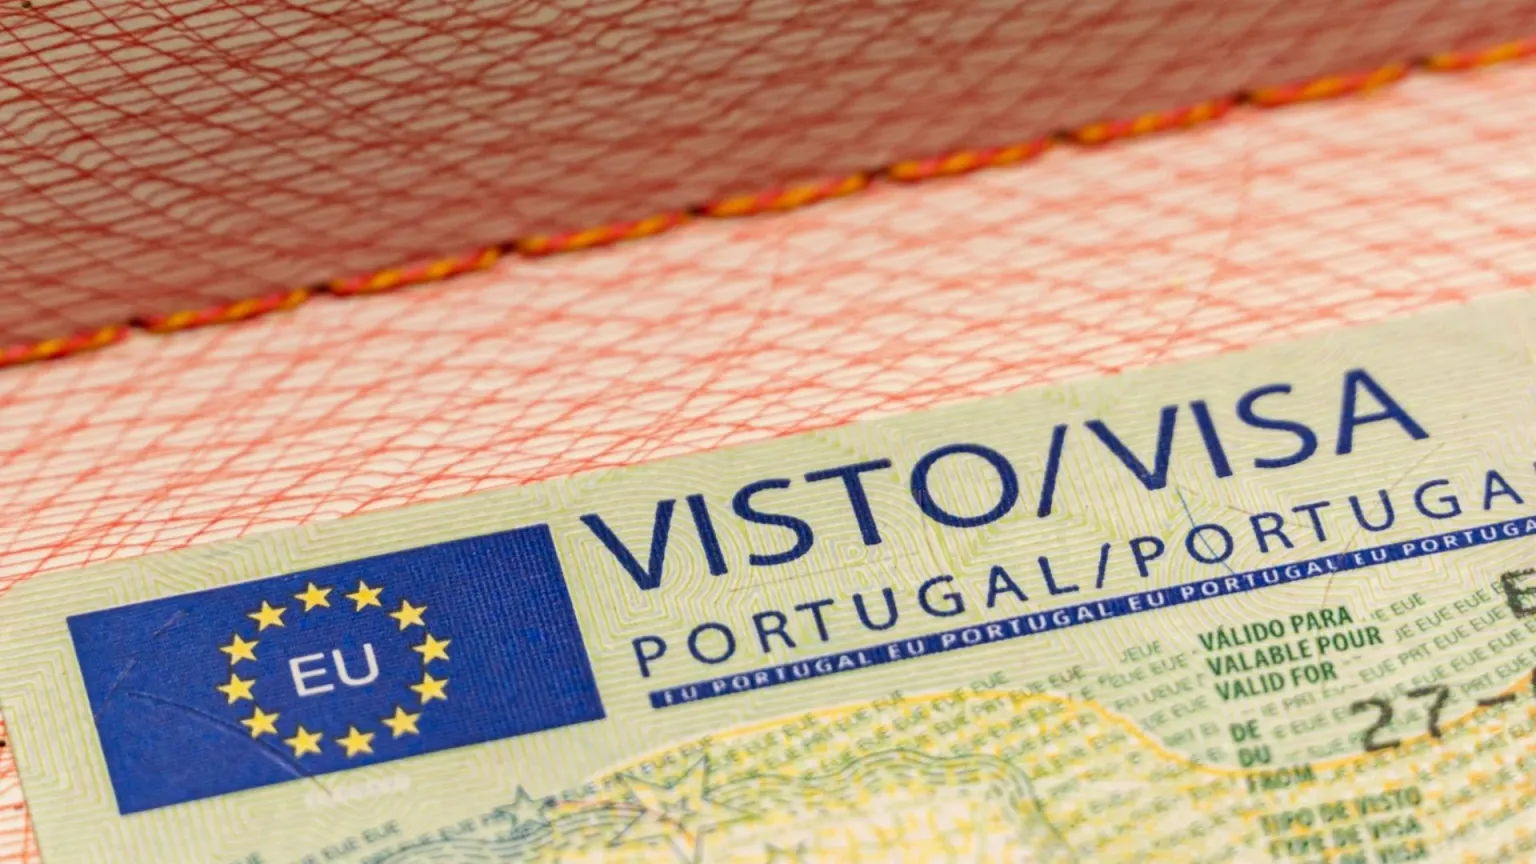 Portugal D8 Digital Nomad Visa 